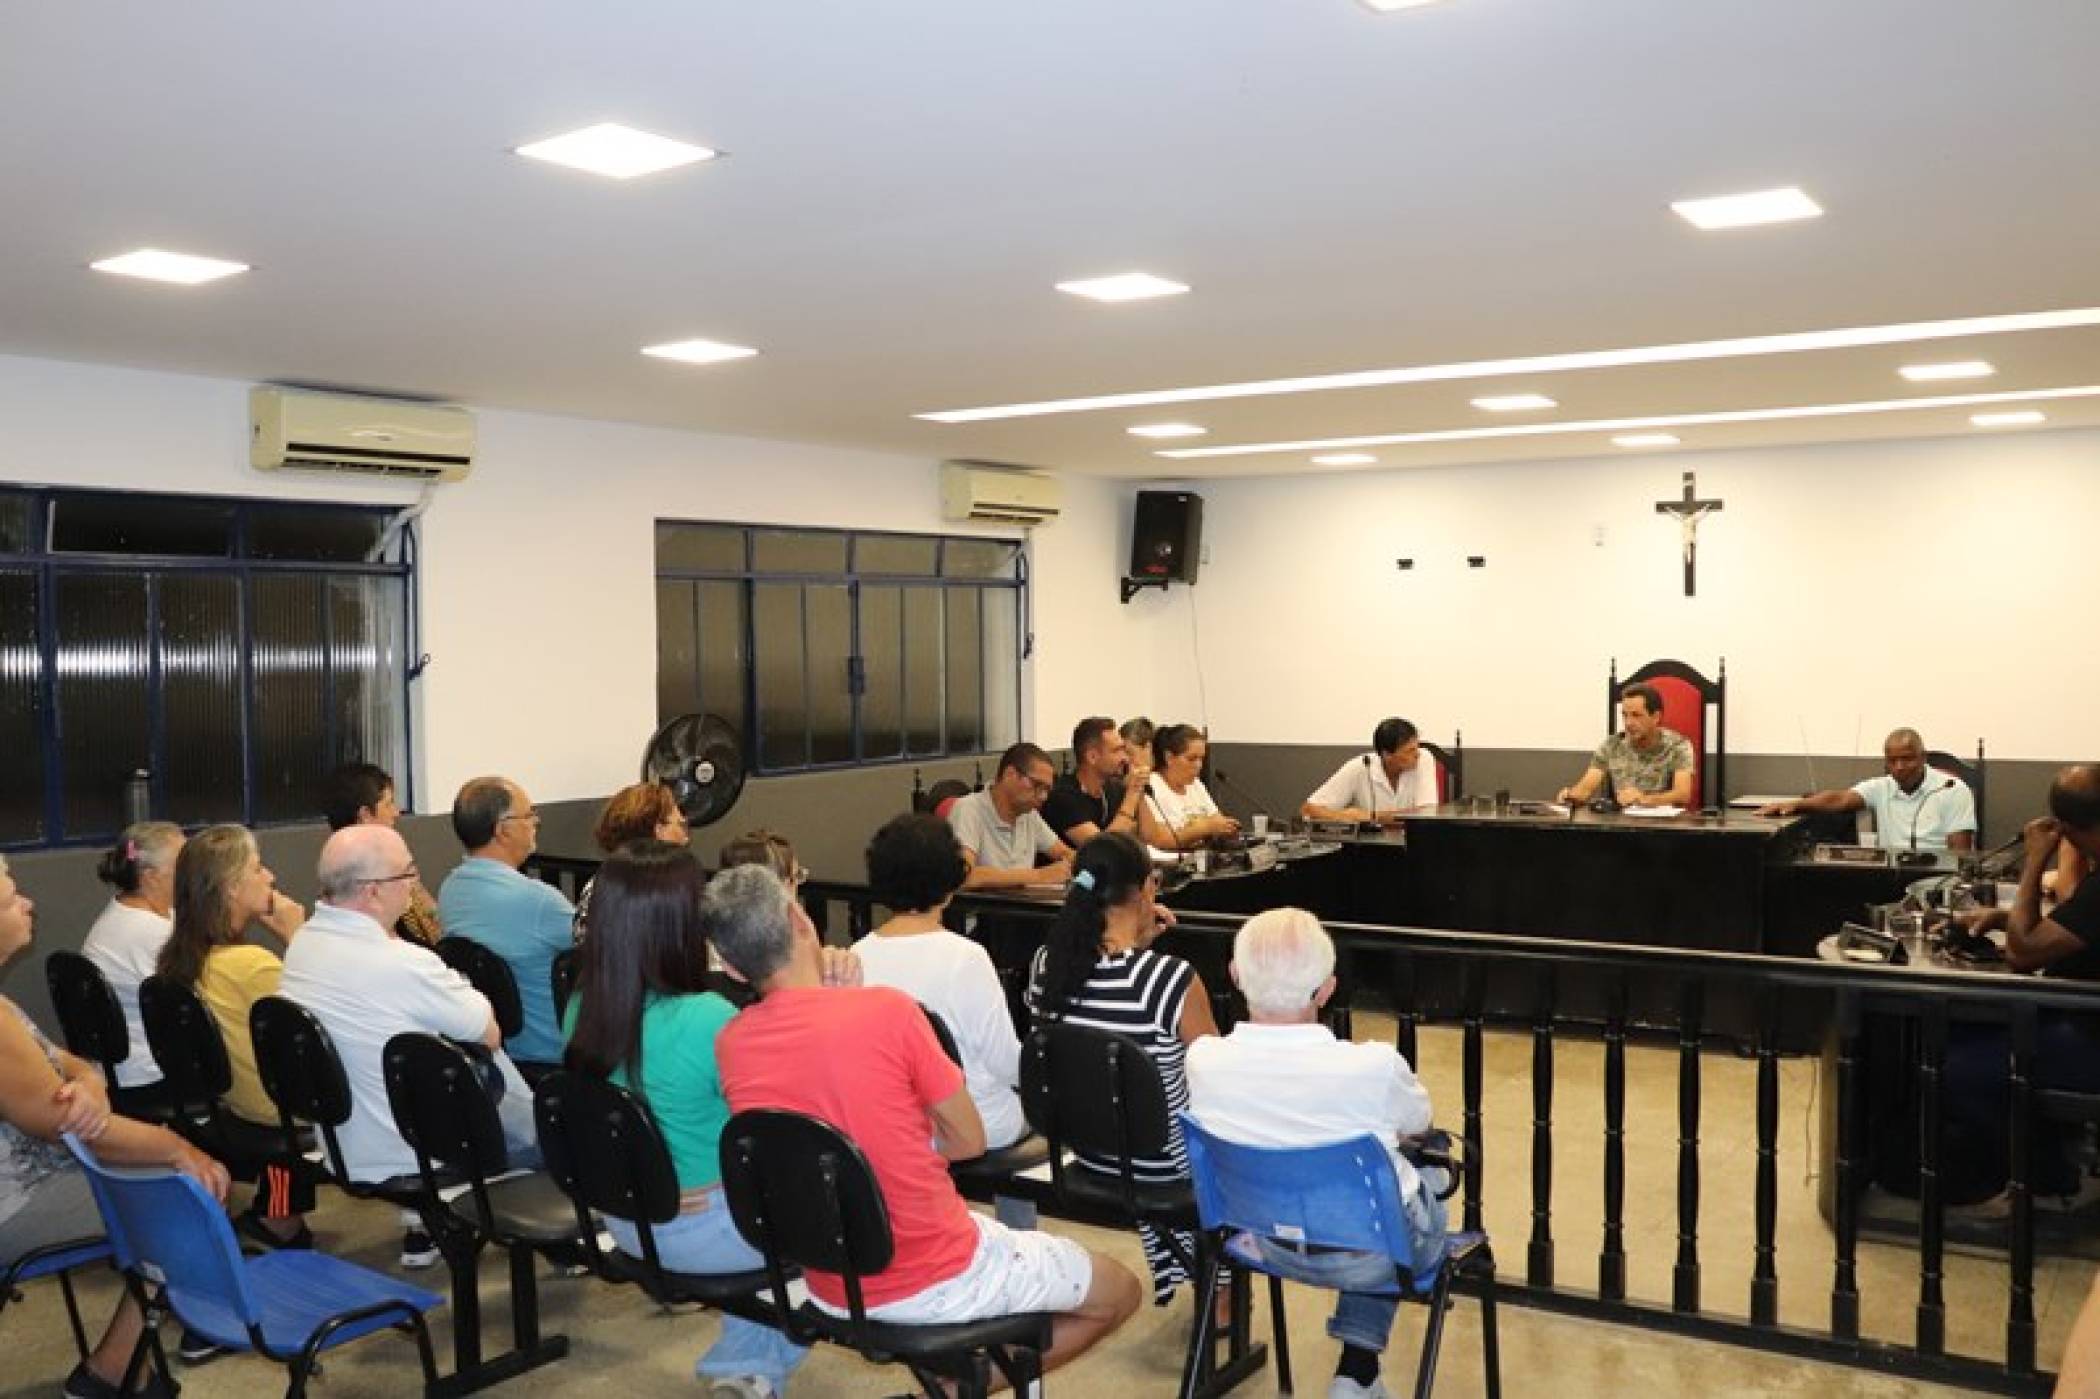 Em sala de reuniões reconstruída vereadores votam pela proibição de fogos de artifício com ruído em Simão Pereira